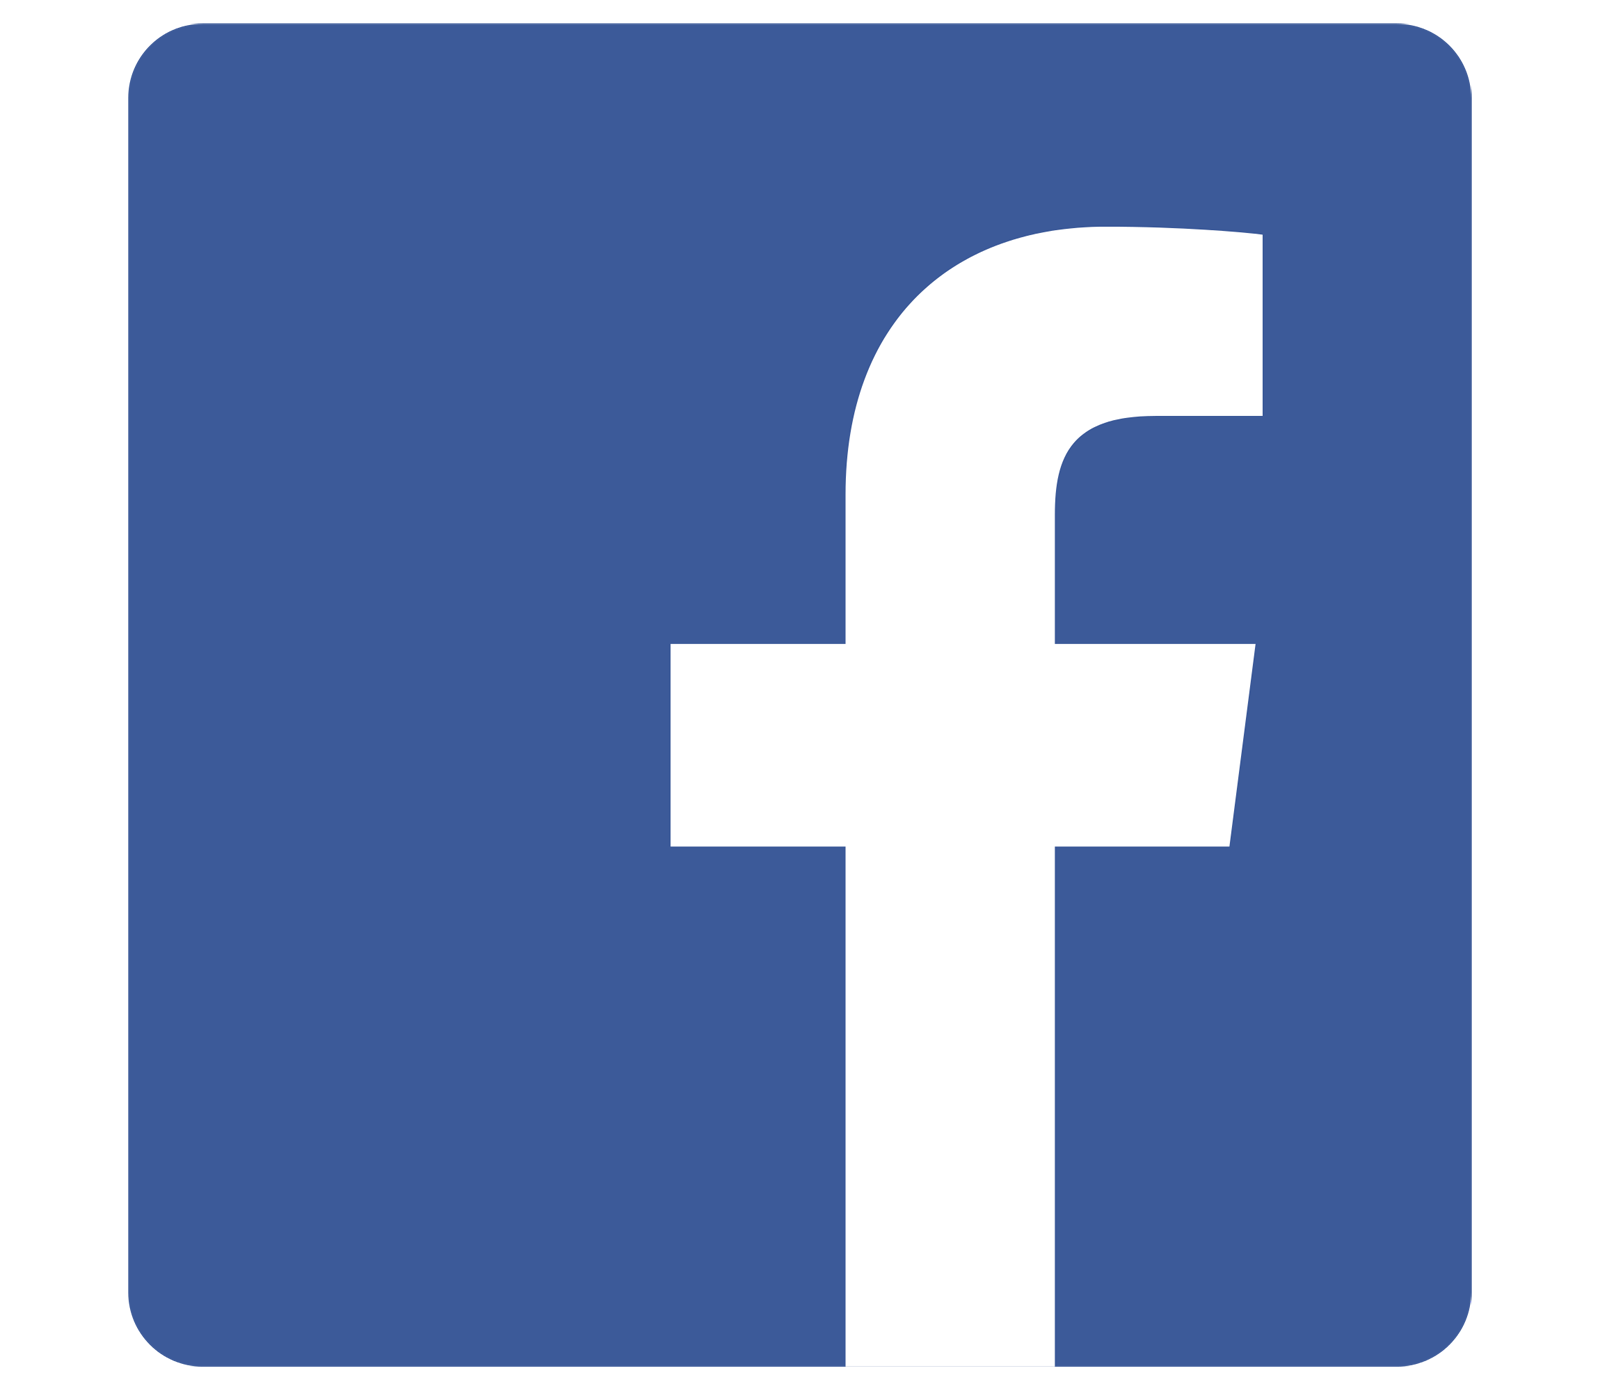 Le Logo Facebook Agecsa